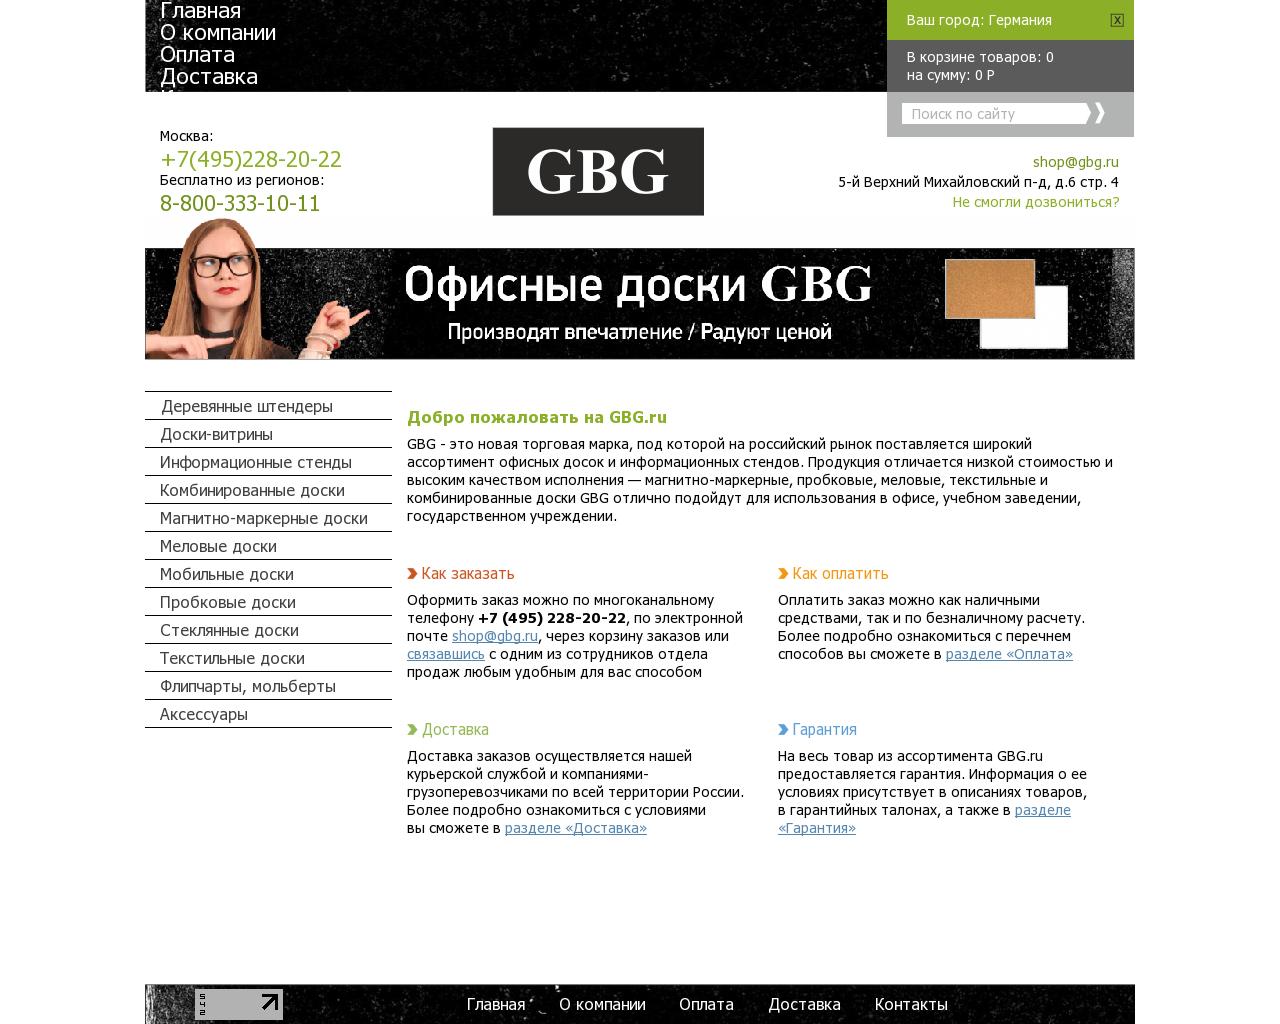 Изображение сайта gbg.ru в разрешении 1280x1024